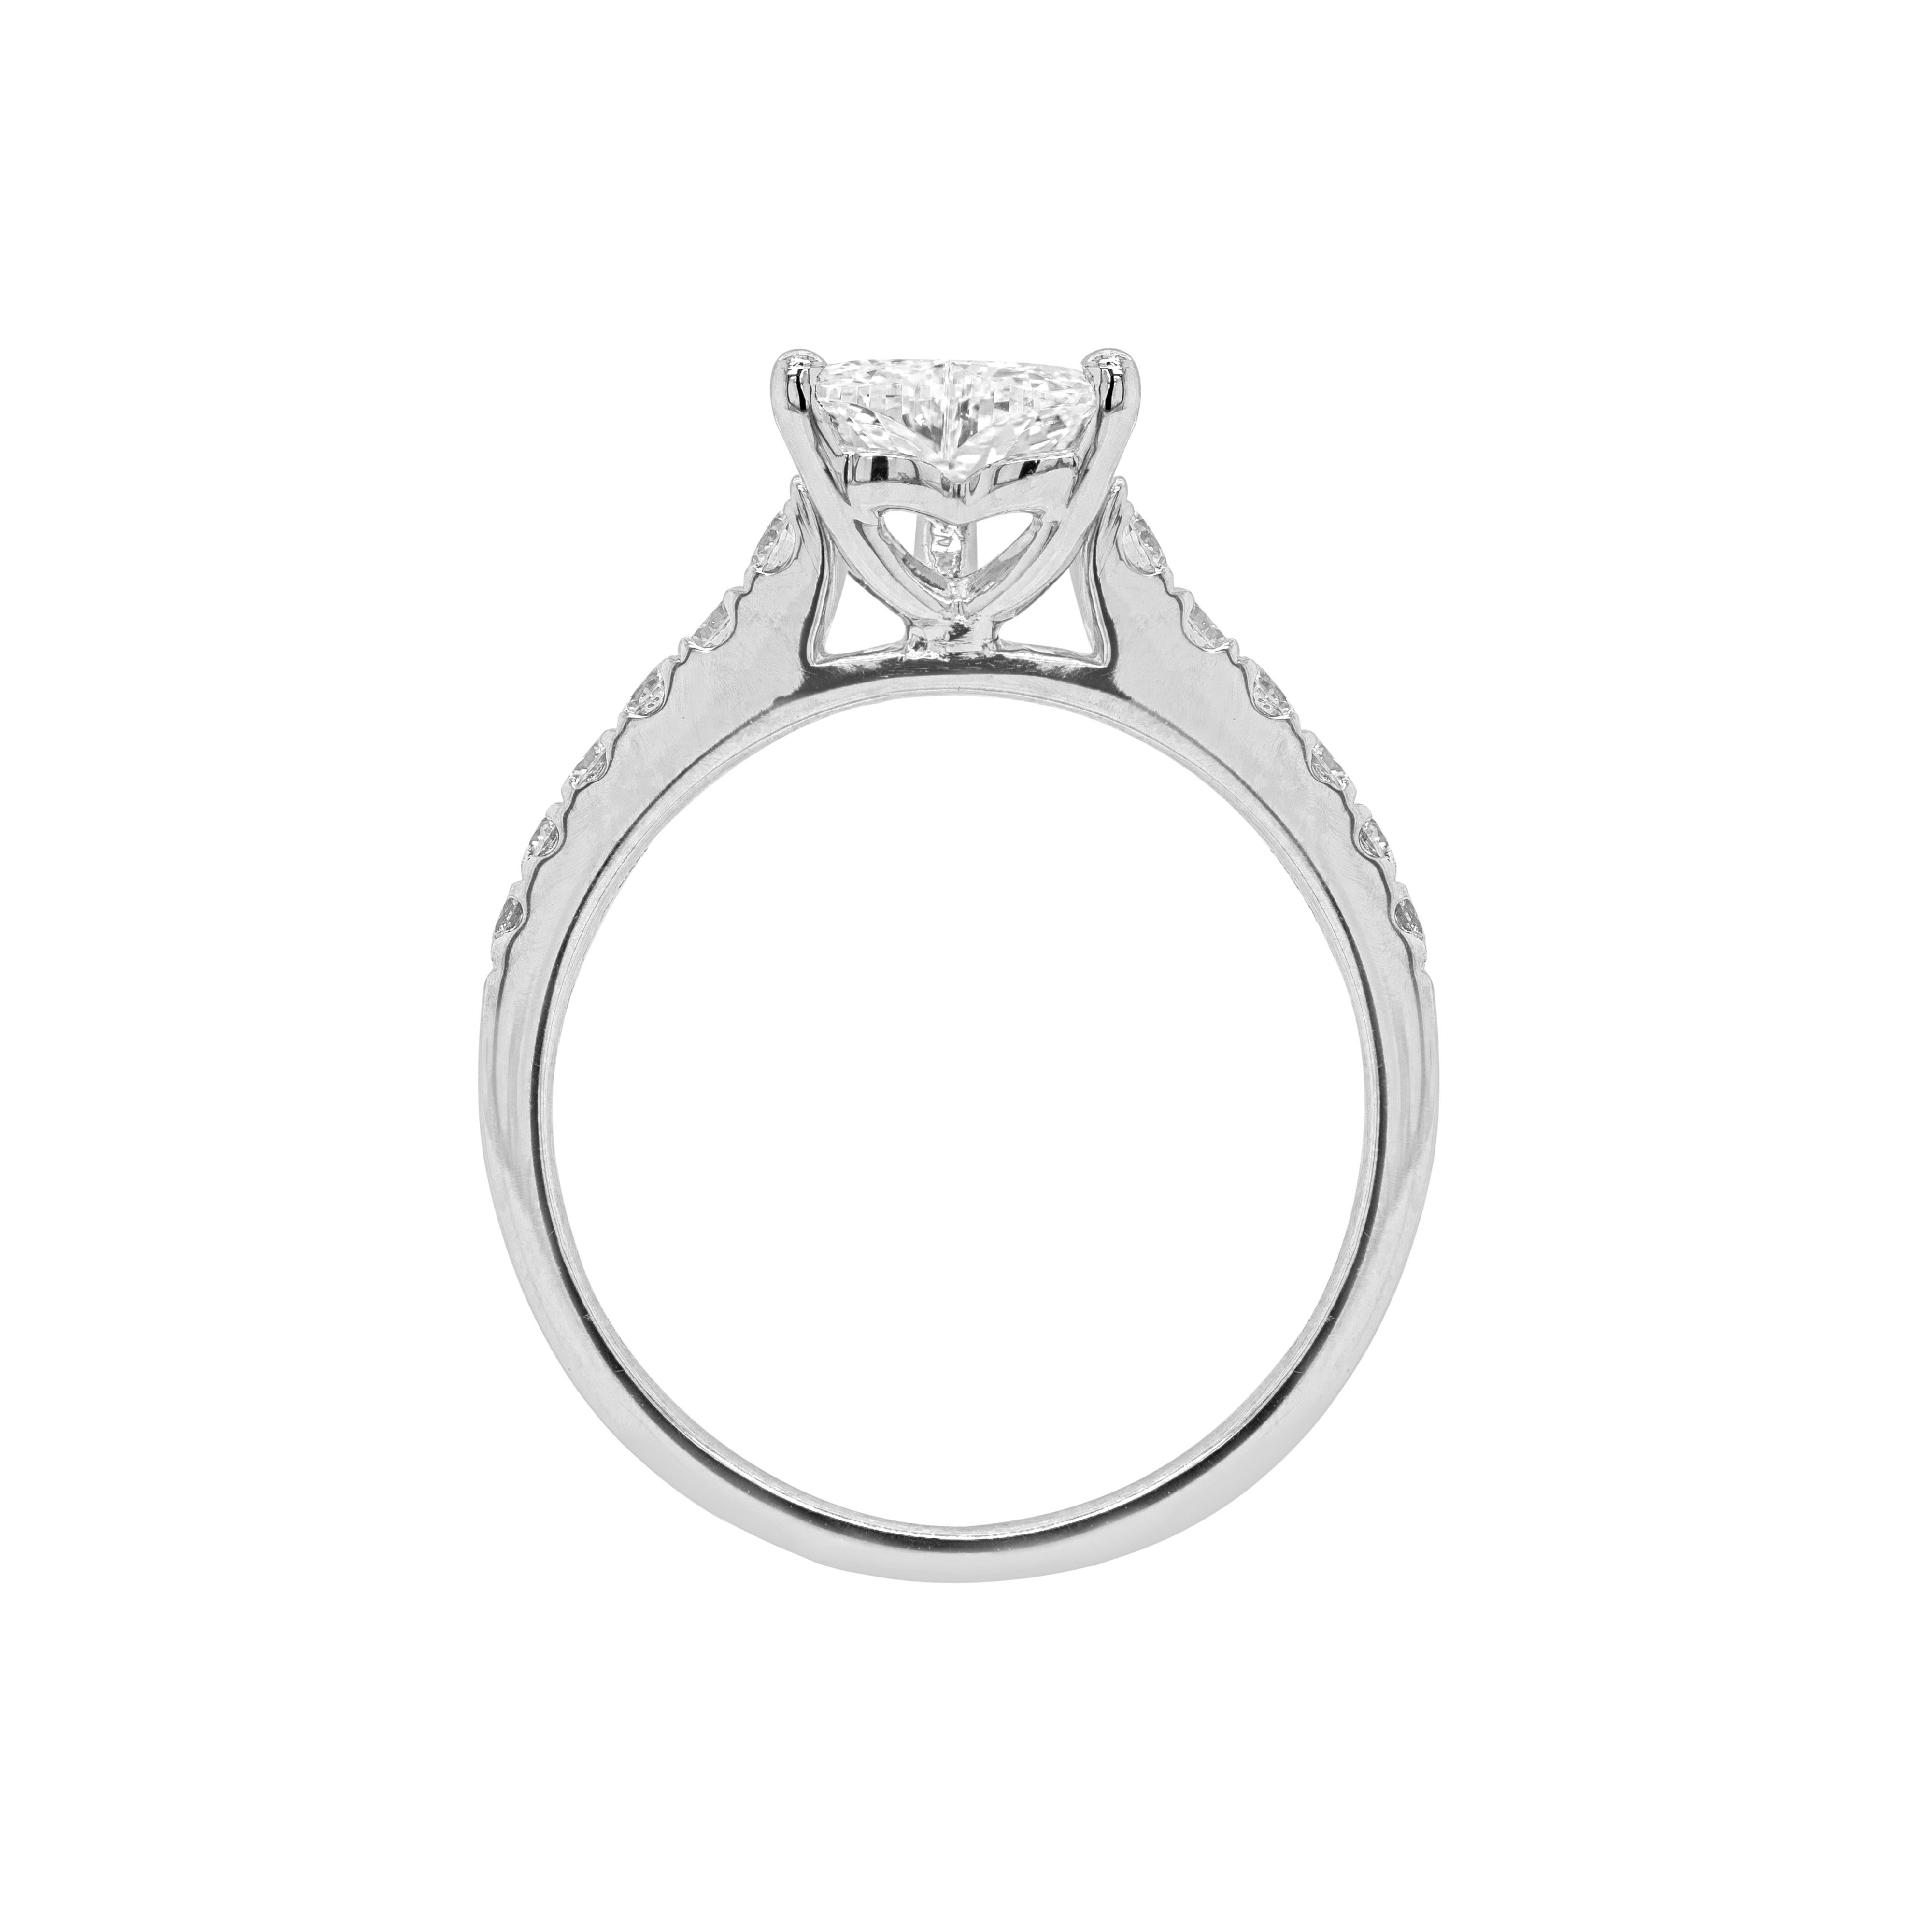 Dieser exquisite Verlobungsring ist mit einem wunderschönen herzförmigen Diamanten von 1,00 ct. in Farbe (I) und Reinheit (VVS1) besetzt, der in einer offenen Fassung mit drei Klauen sitzt. Der schöne Stein wird von sechs feinen runden Diamanten im